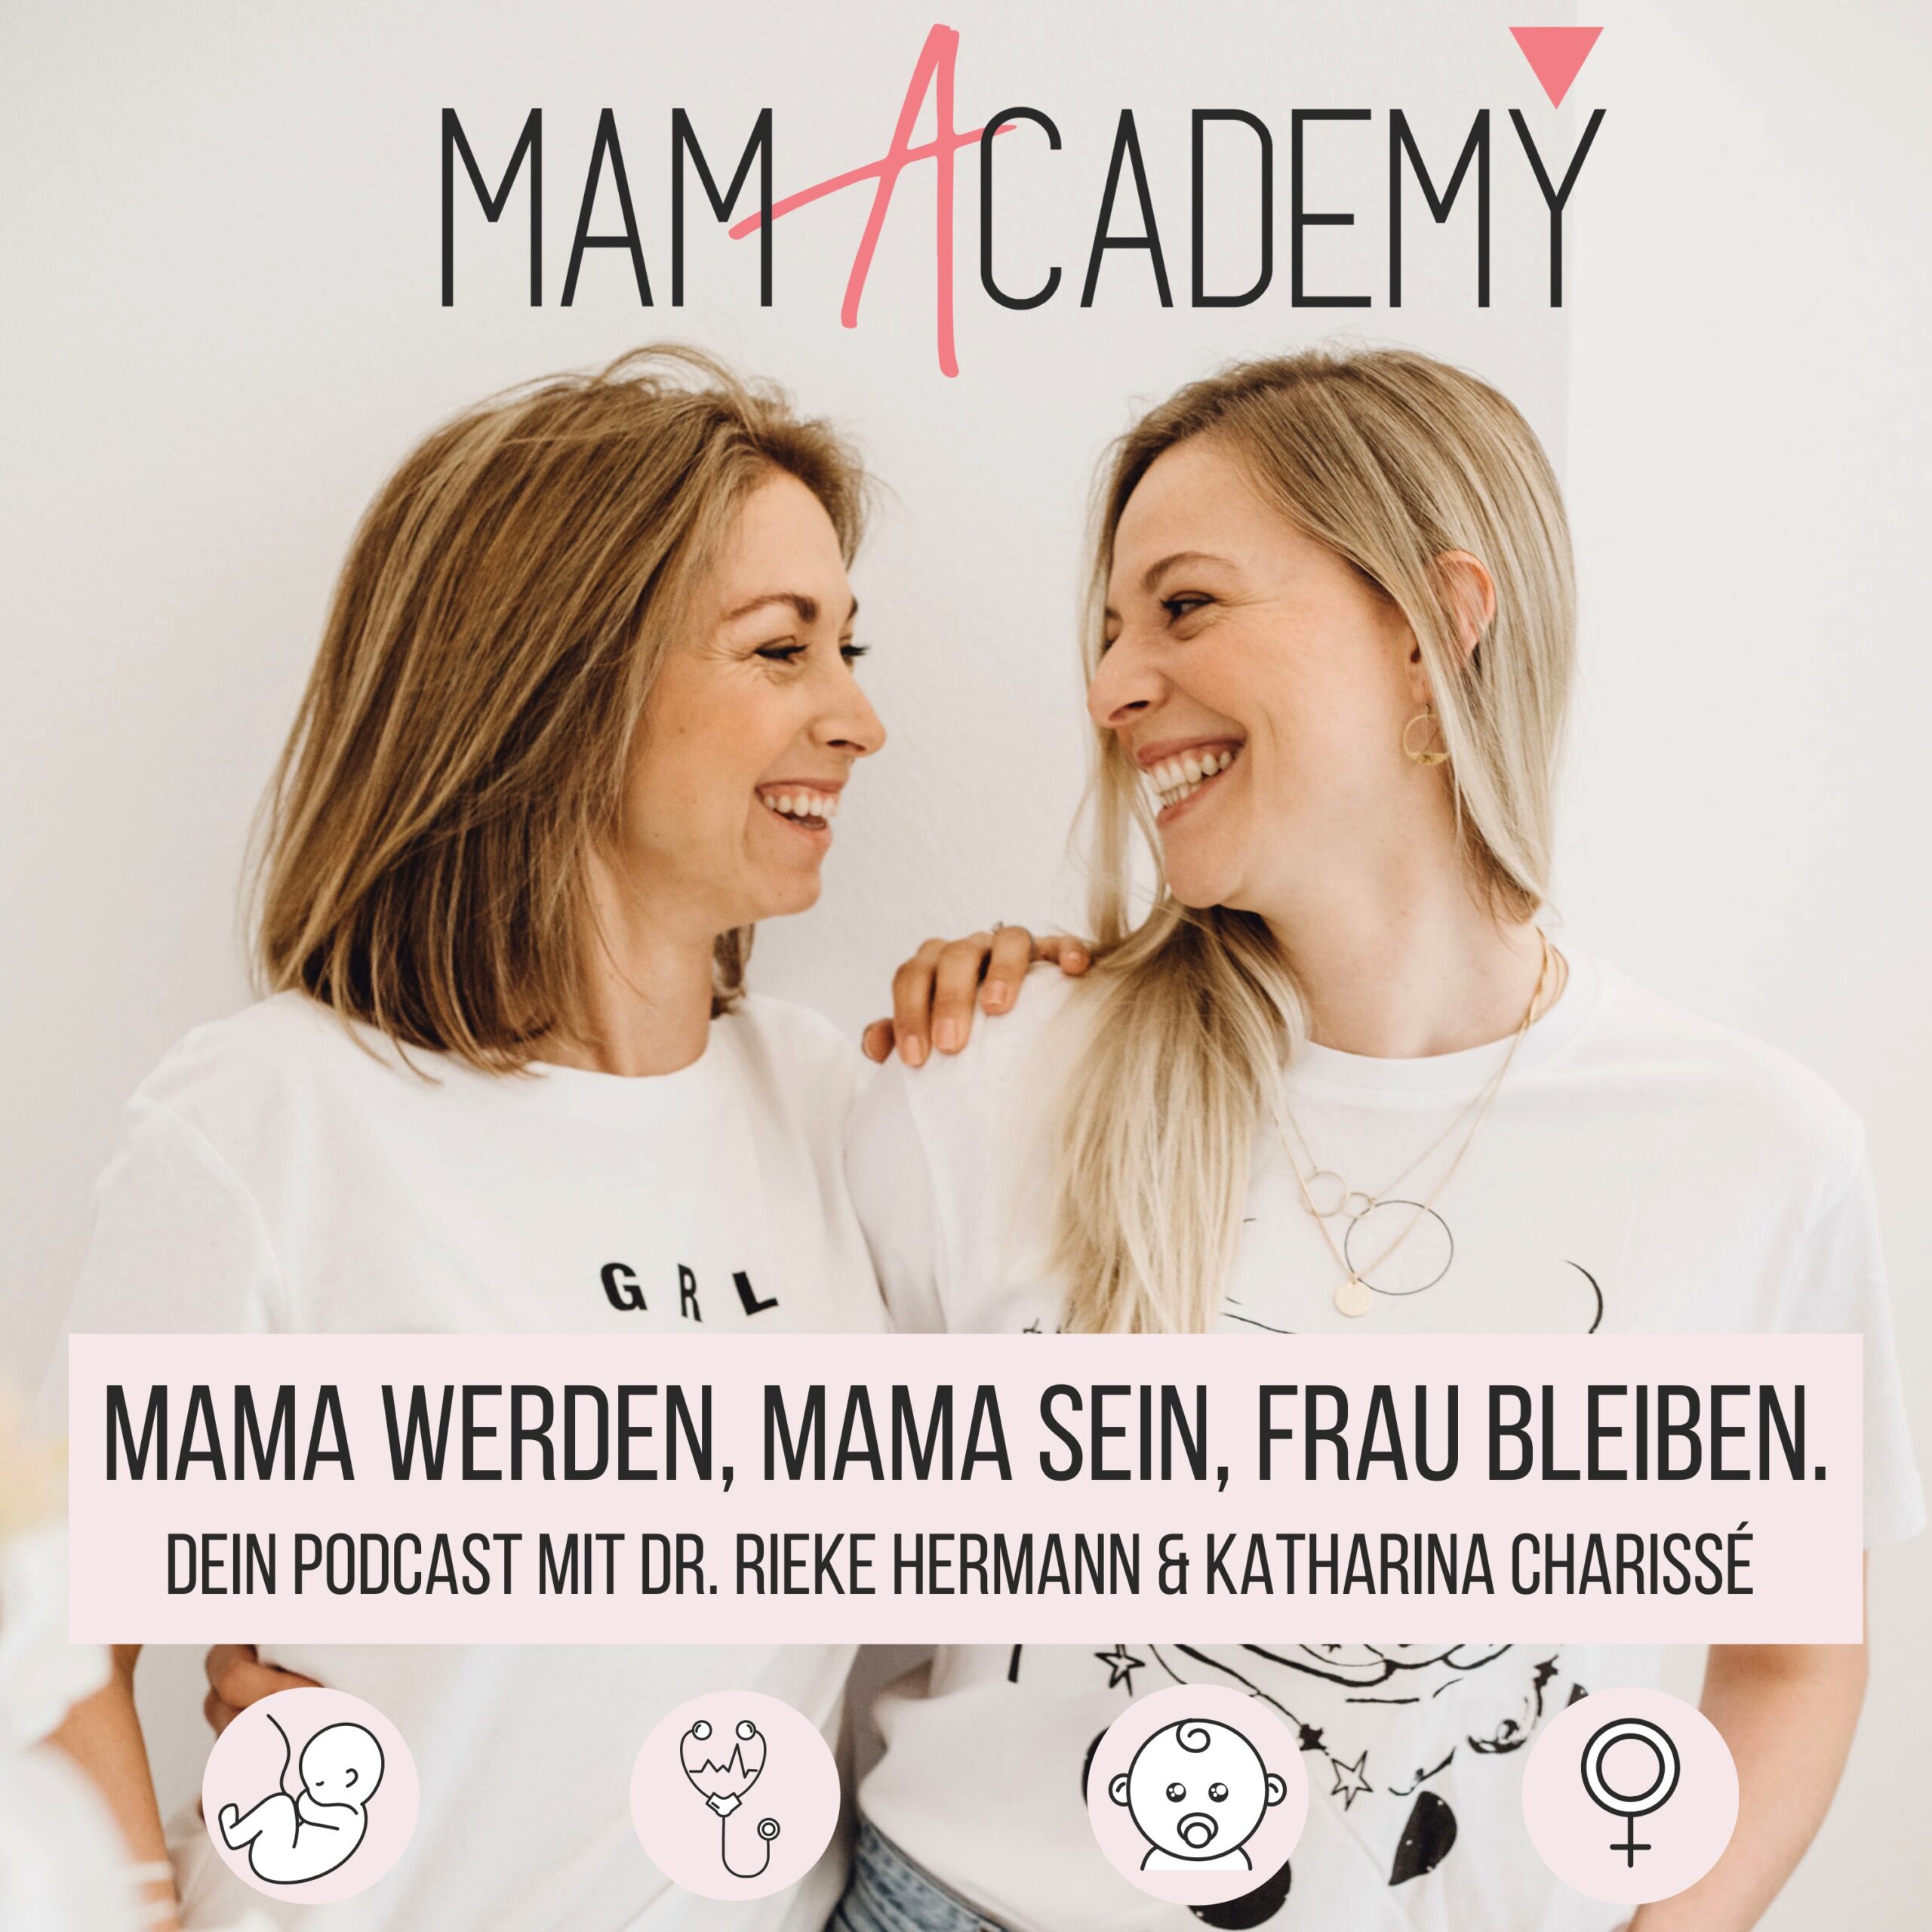 Vorgestellt: MamAcademy – Mama werden, Mama sein, Frau bleiben